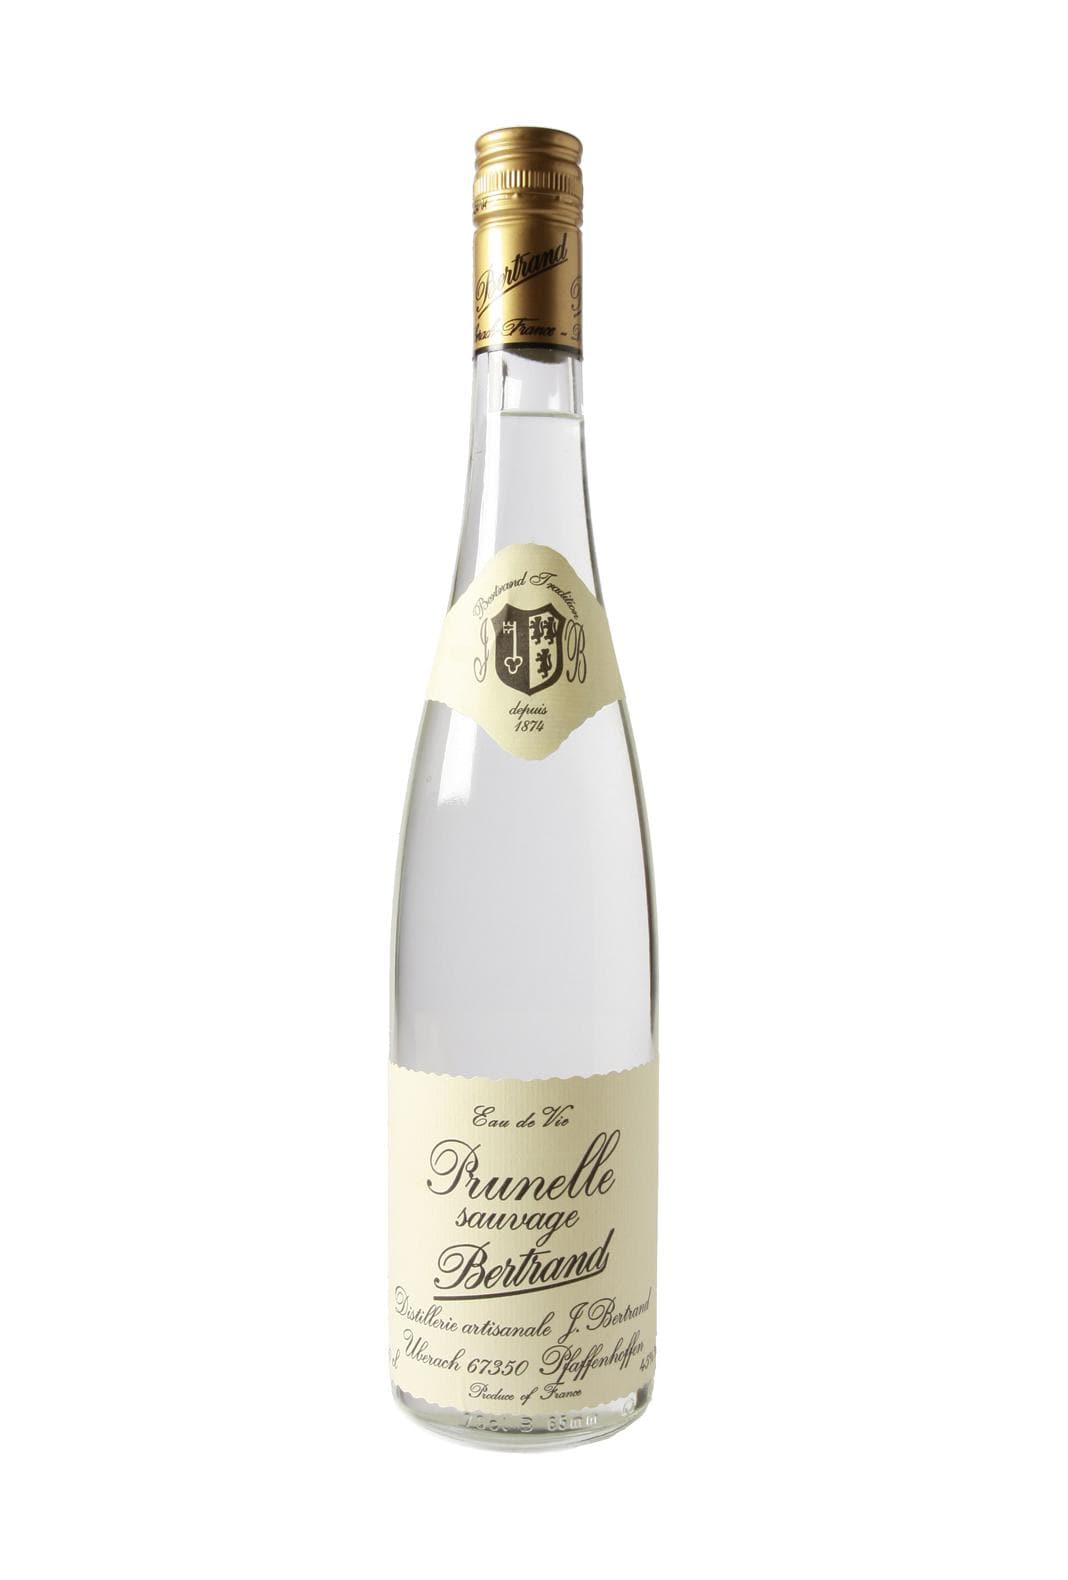 Bertrand Eau de Vie de Prunelle Sauvage (Sloe Berry) 45% 700ml | Liqueurs | Shop online at Spirits of France